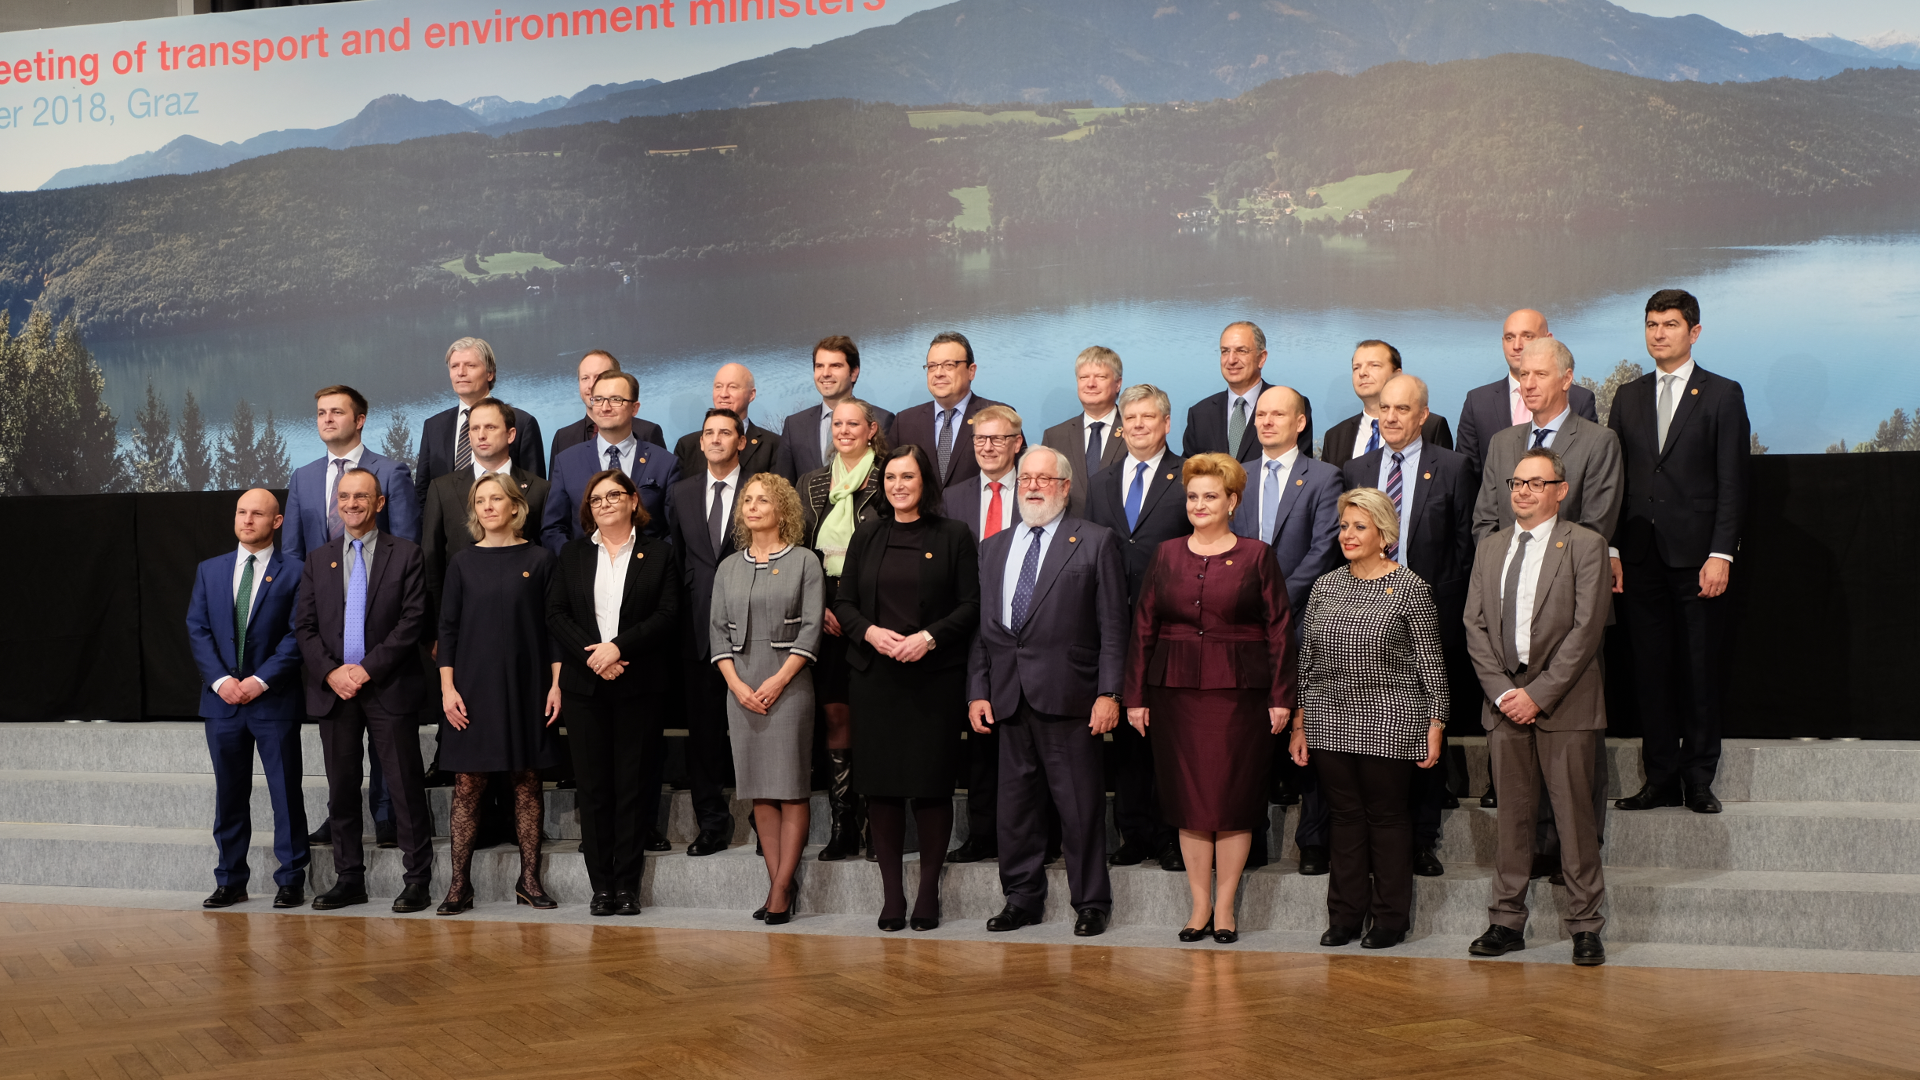 Informelles Treffen der EU Verkehrs und Umweltminister-Gruppenfoto-Elisabeth Köstinger-Graz-Umweltminister